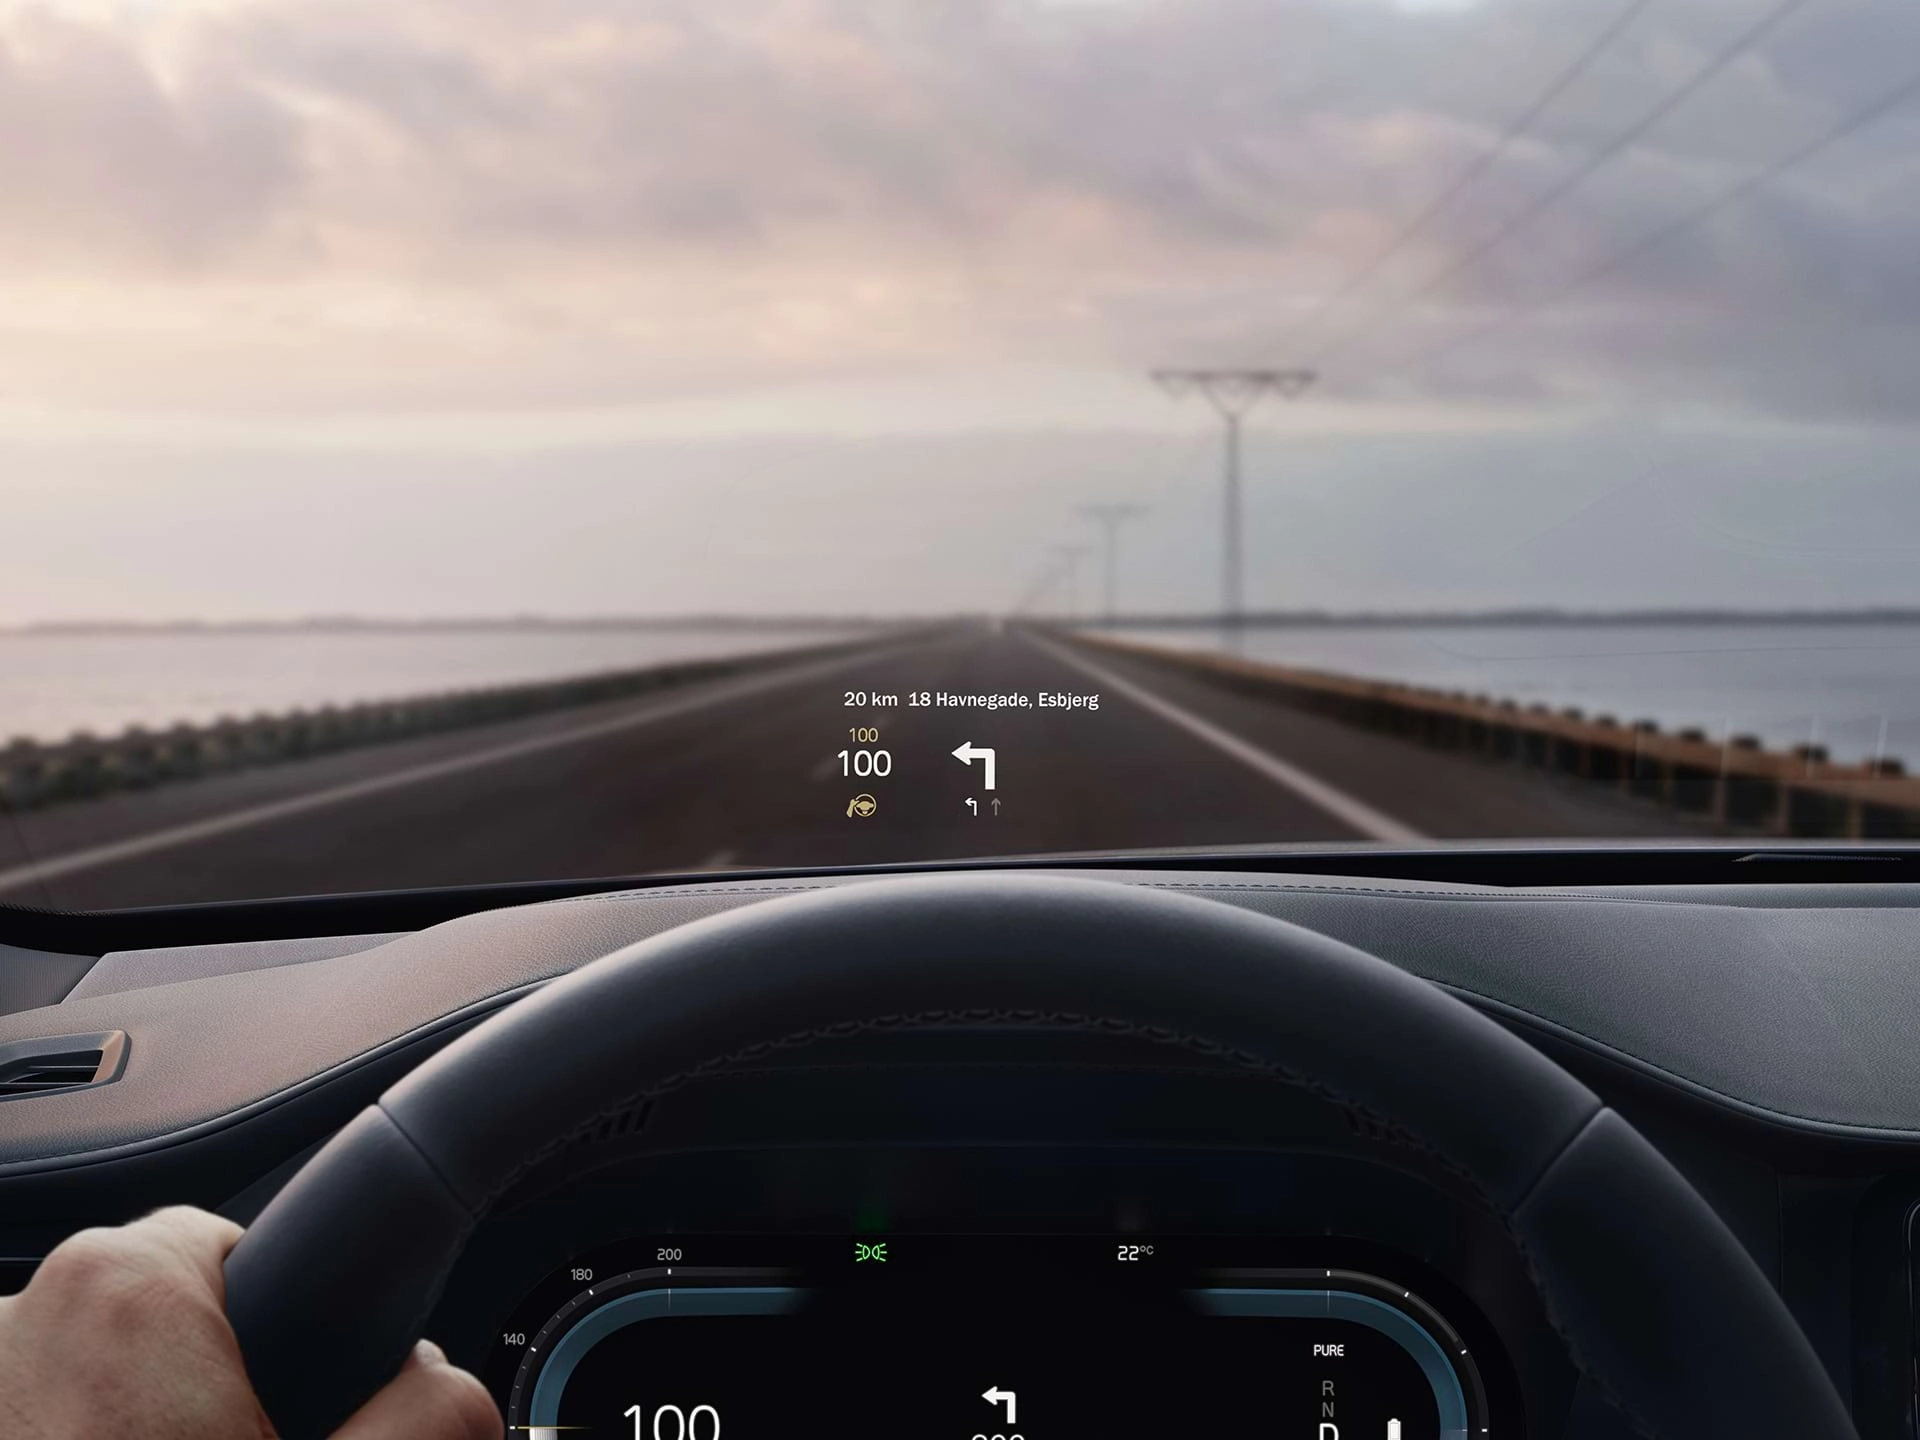 Pogled iz ugla vozača na head-up prikaz koji se pojavljuje na vjetrobranskom staklu Volvo automobila.